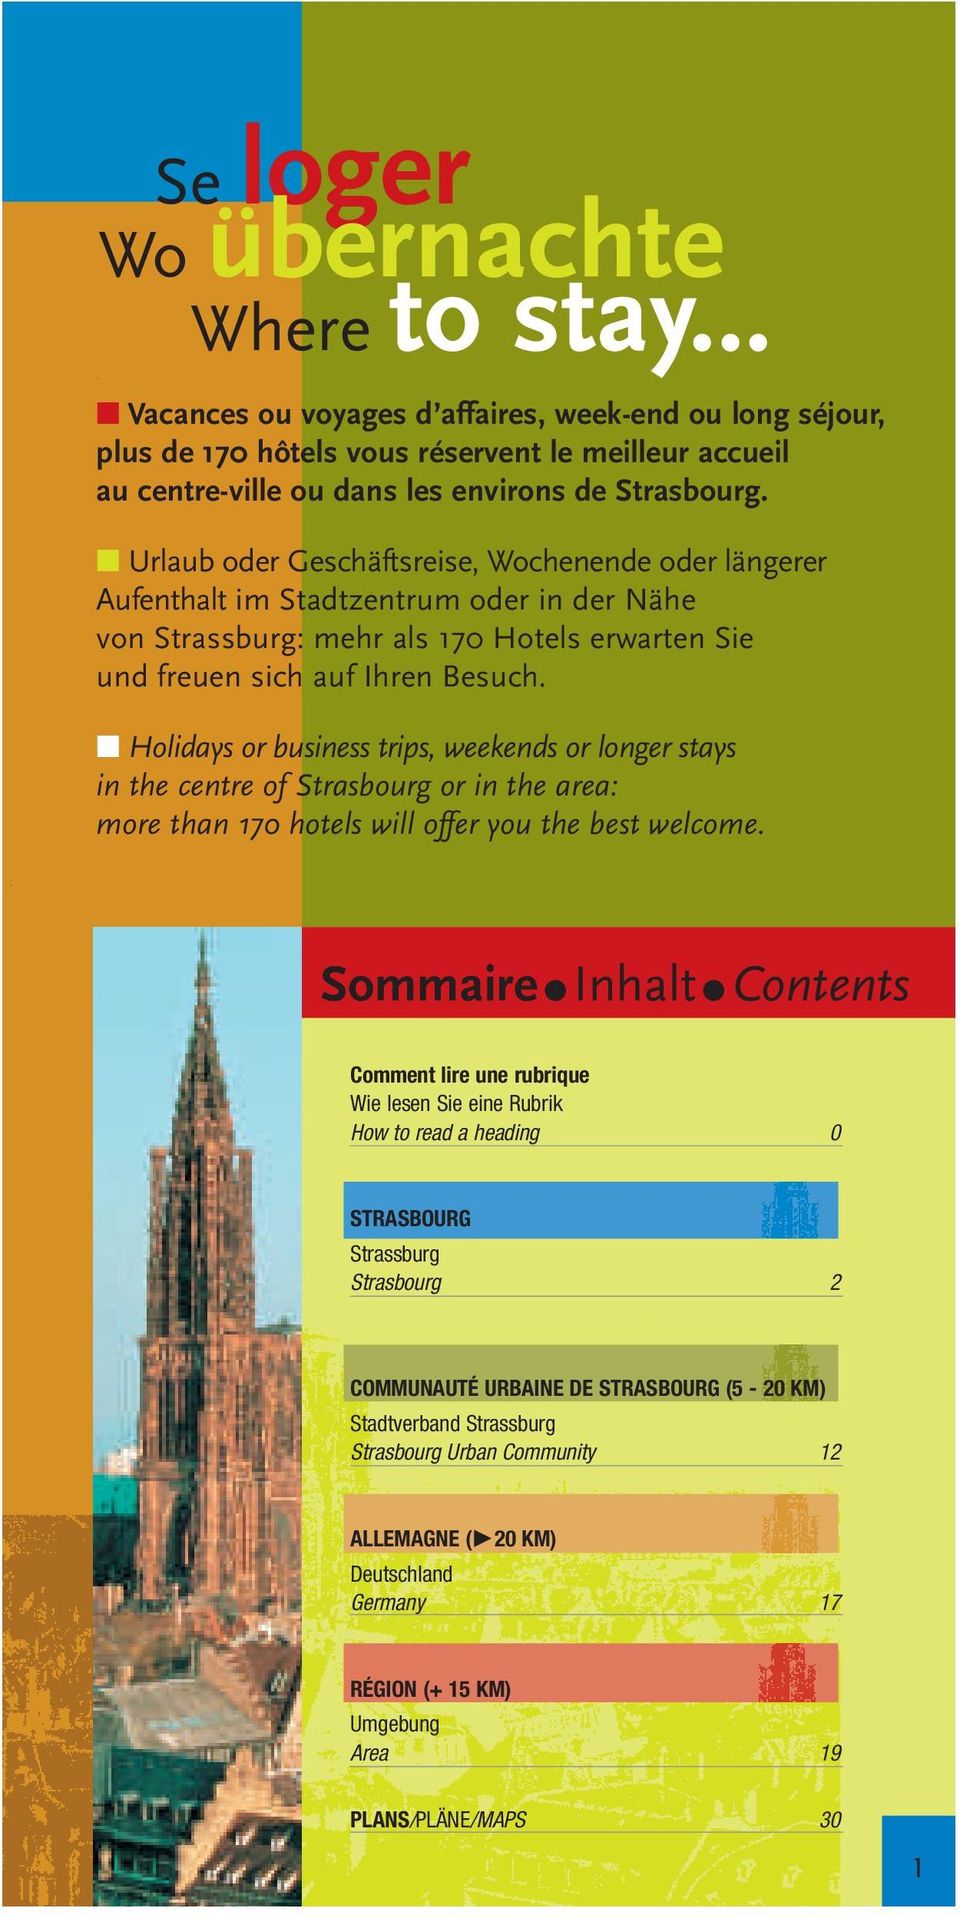 Urlaub oder Geschäftsreise, Wochenende oder längerer Aufenthalt im Stadtzentrum oder in der Nähe von Strassburg: mehr als 170 Hotels erwarten Sie und freuen sich auf Ihren Besuch.